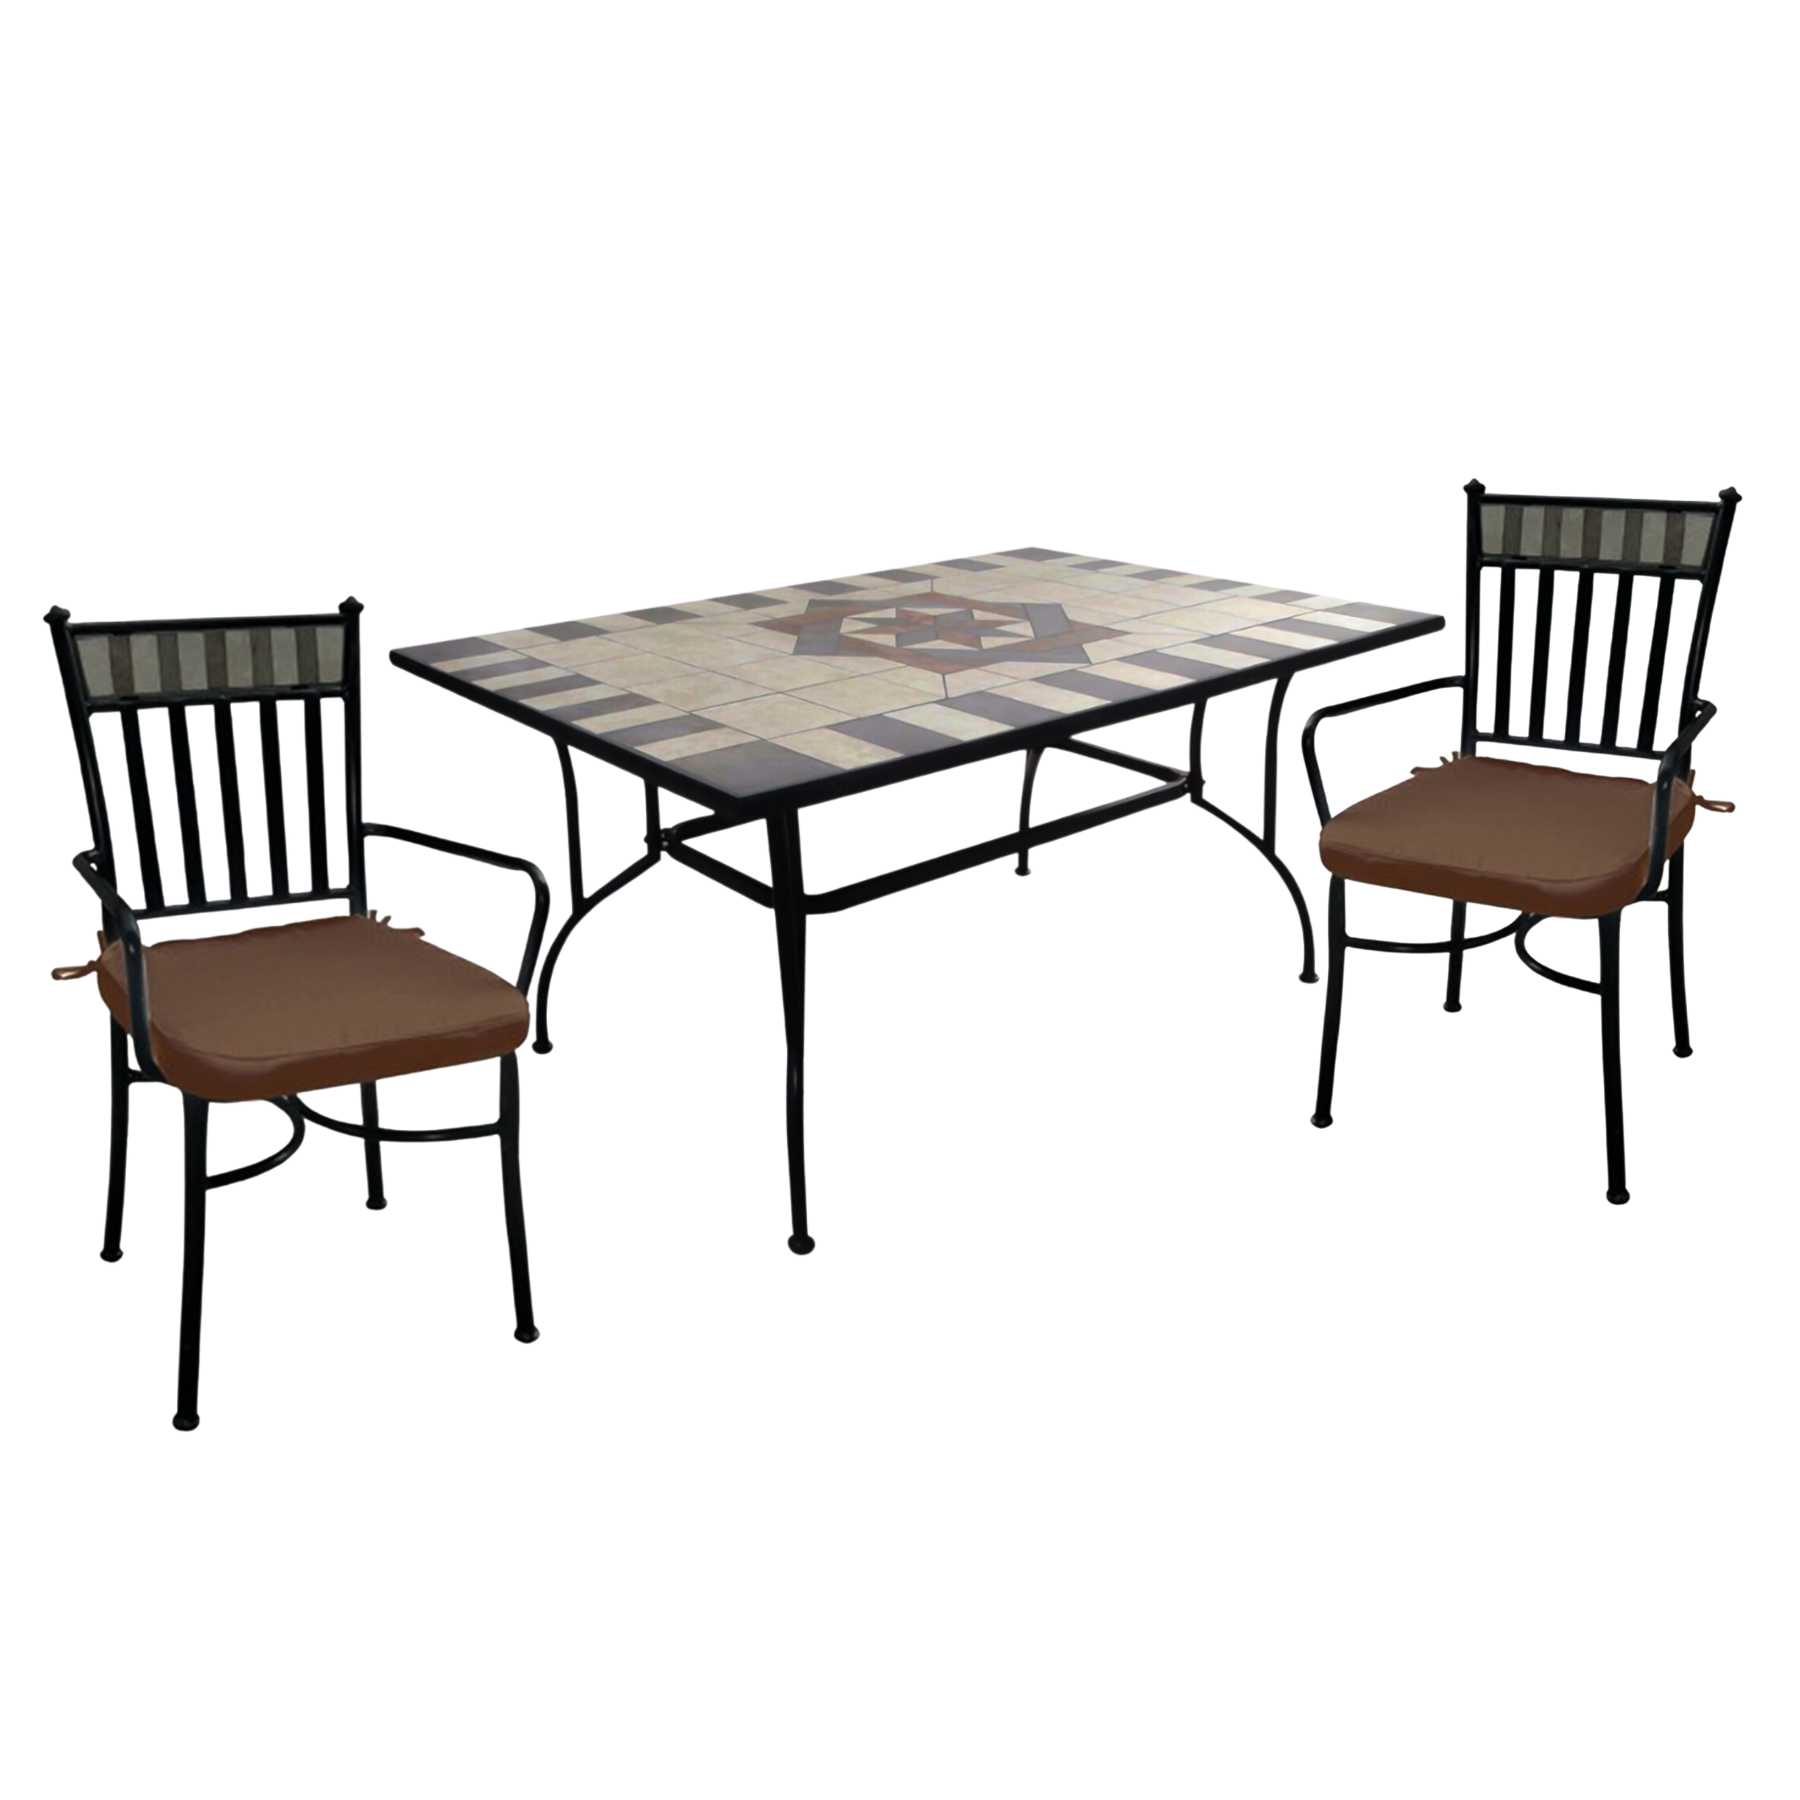 Set da pranzo completo di 2 sedie + tavolo Artdecò Mosaico in ceramica per giardino